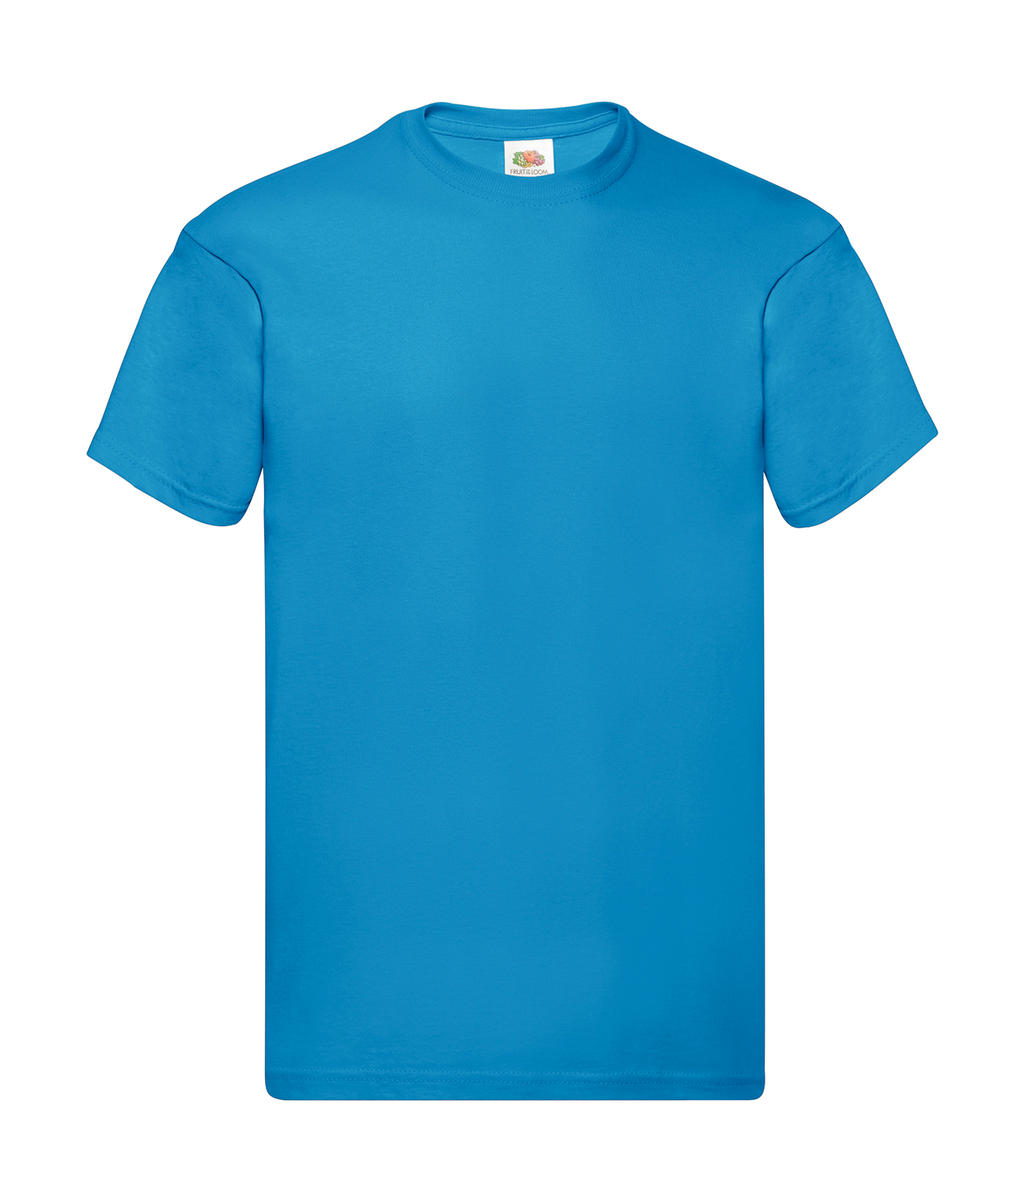 Tričko Original T - azure blue